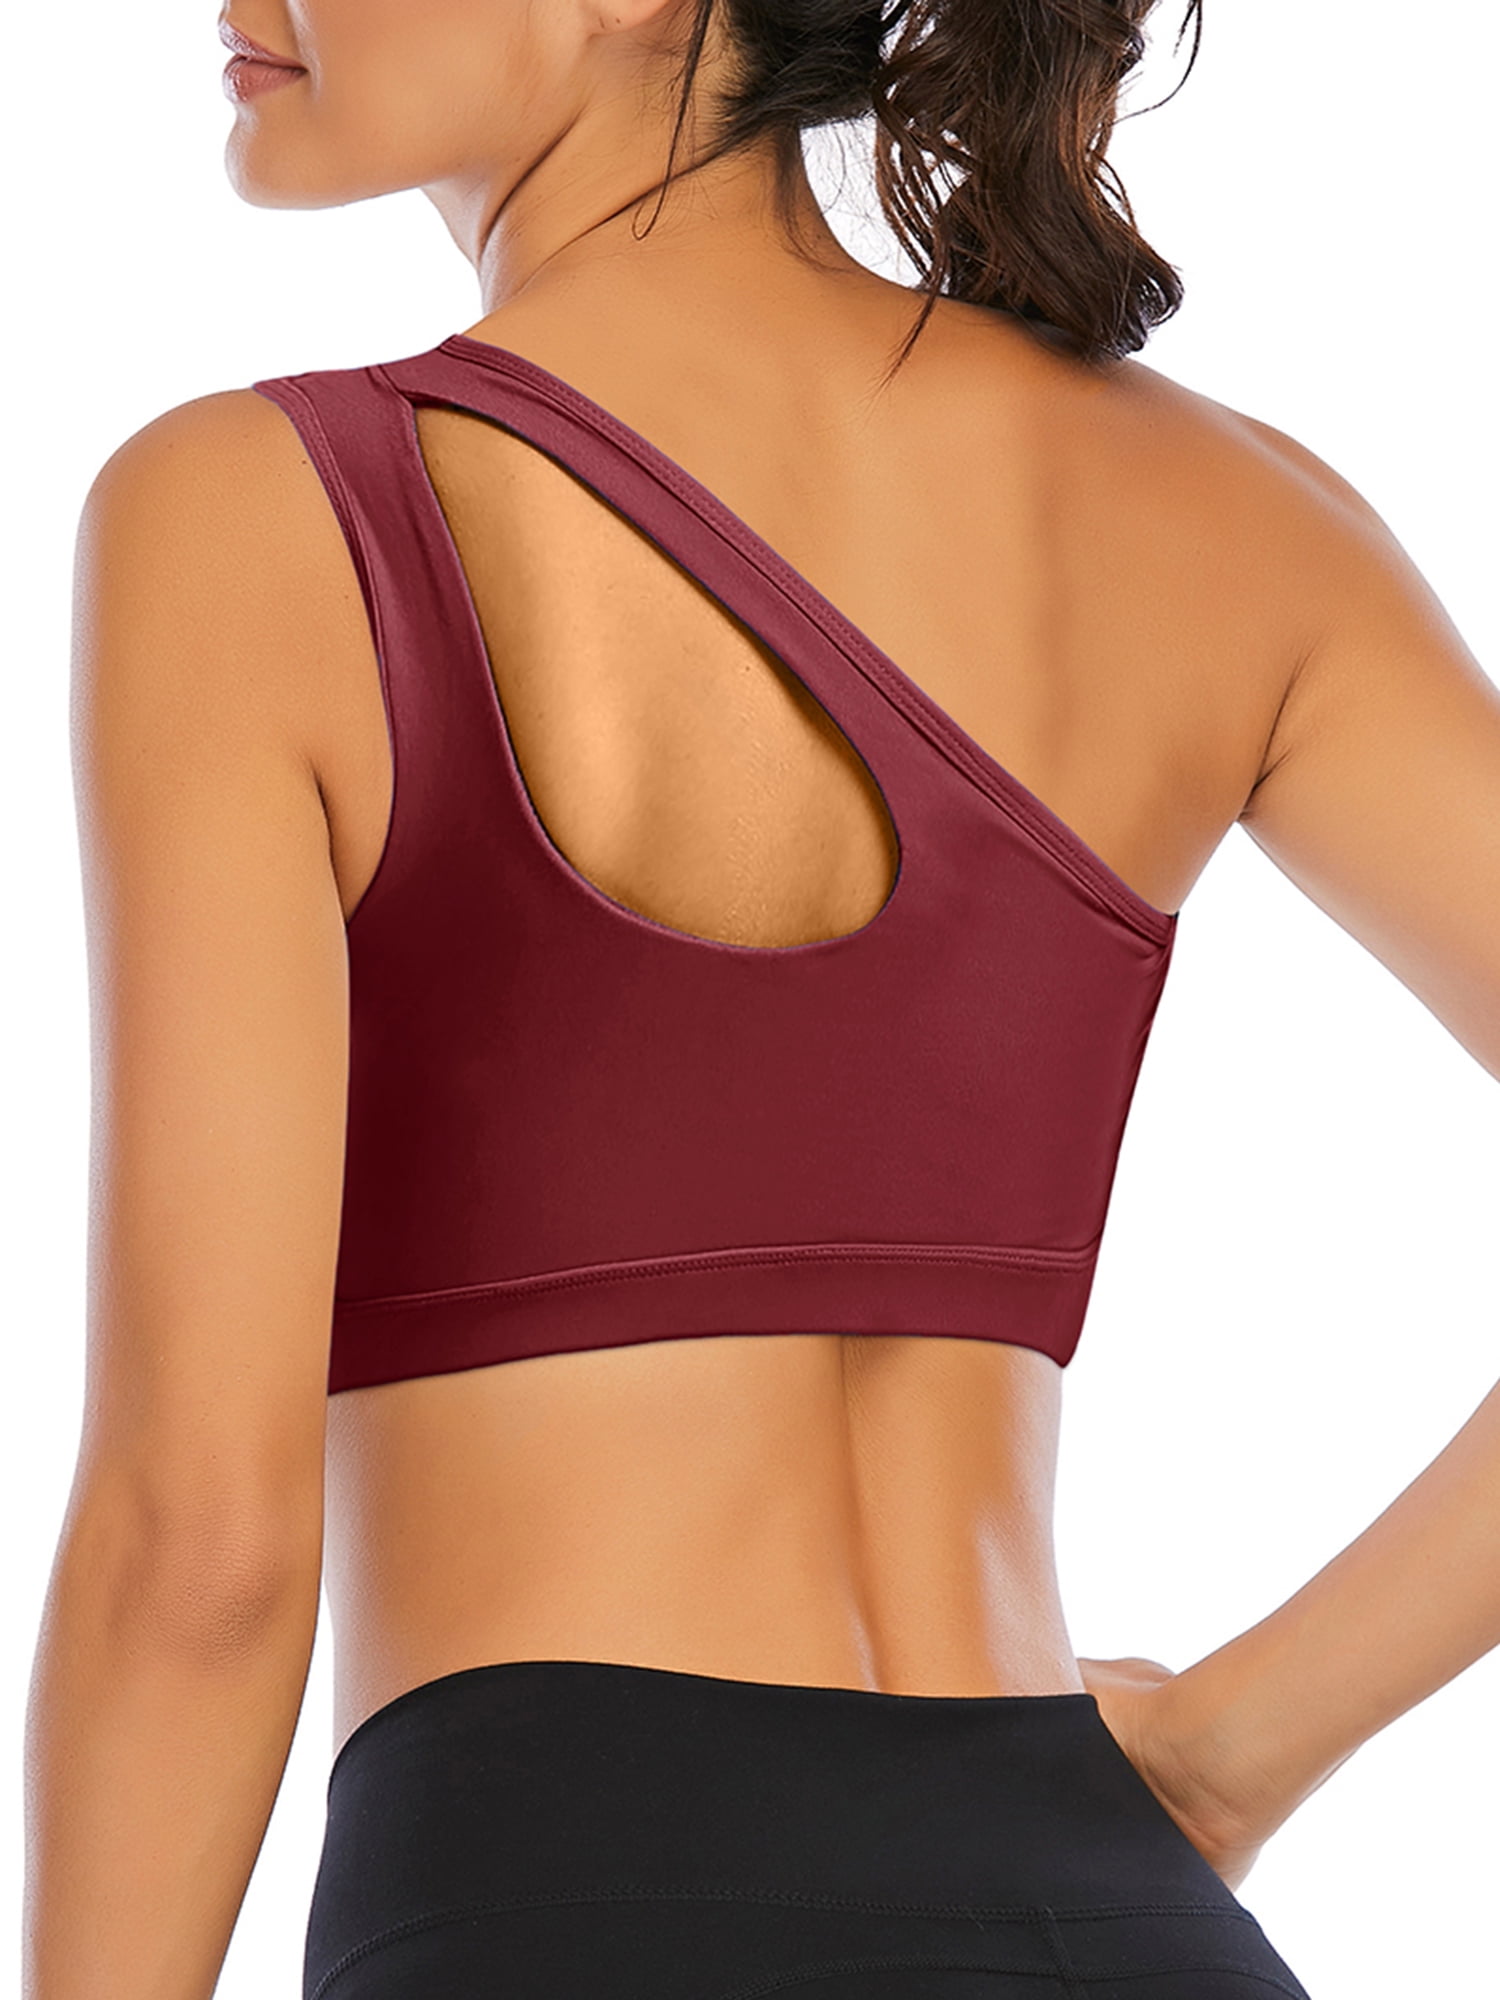 Suyye Women 4 Pieces Crop Tank Tops Yoga Raceback Sports Workout Bras Cotton Top